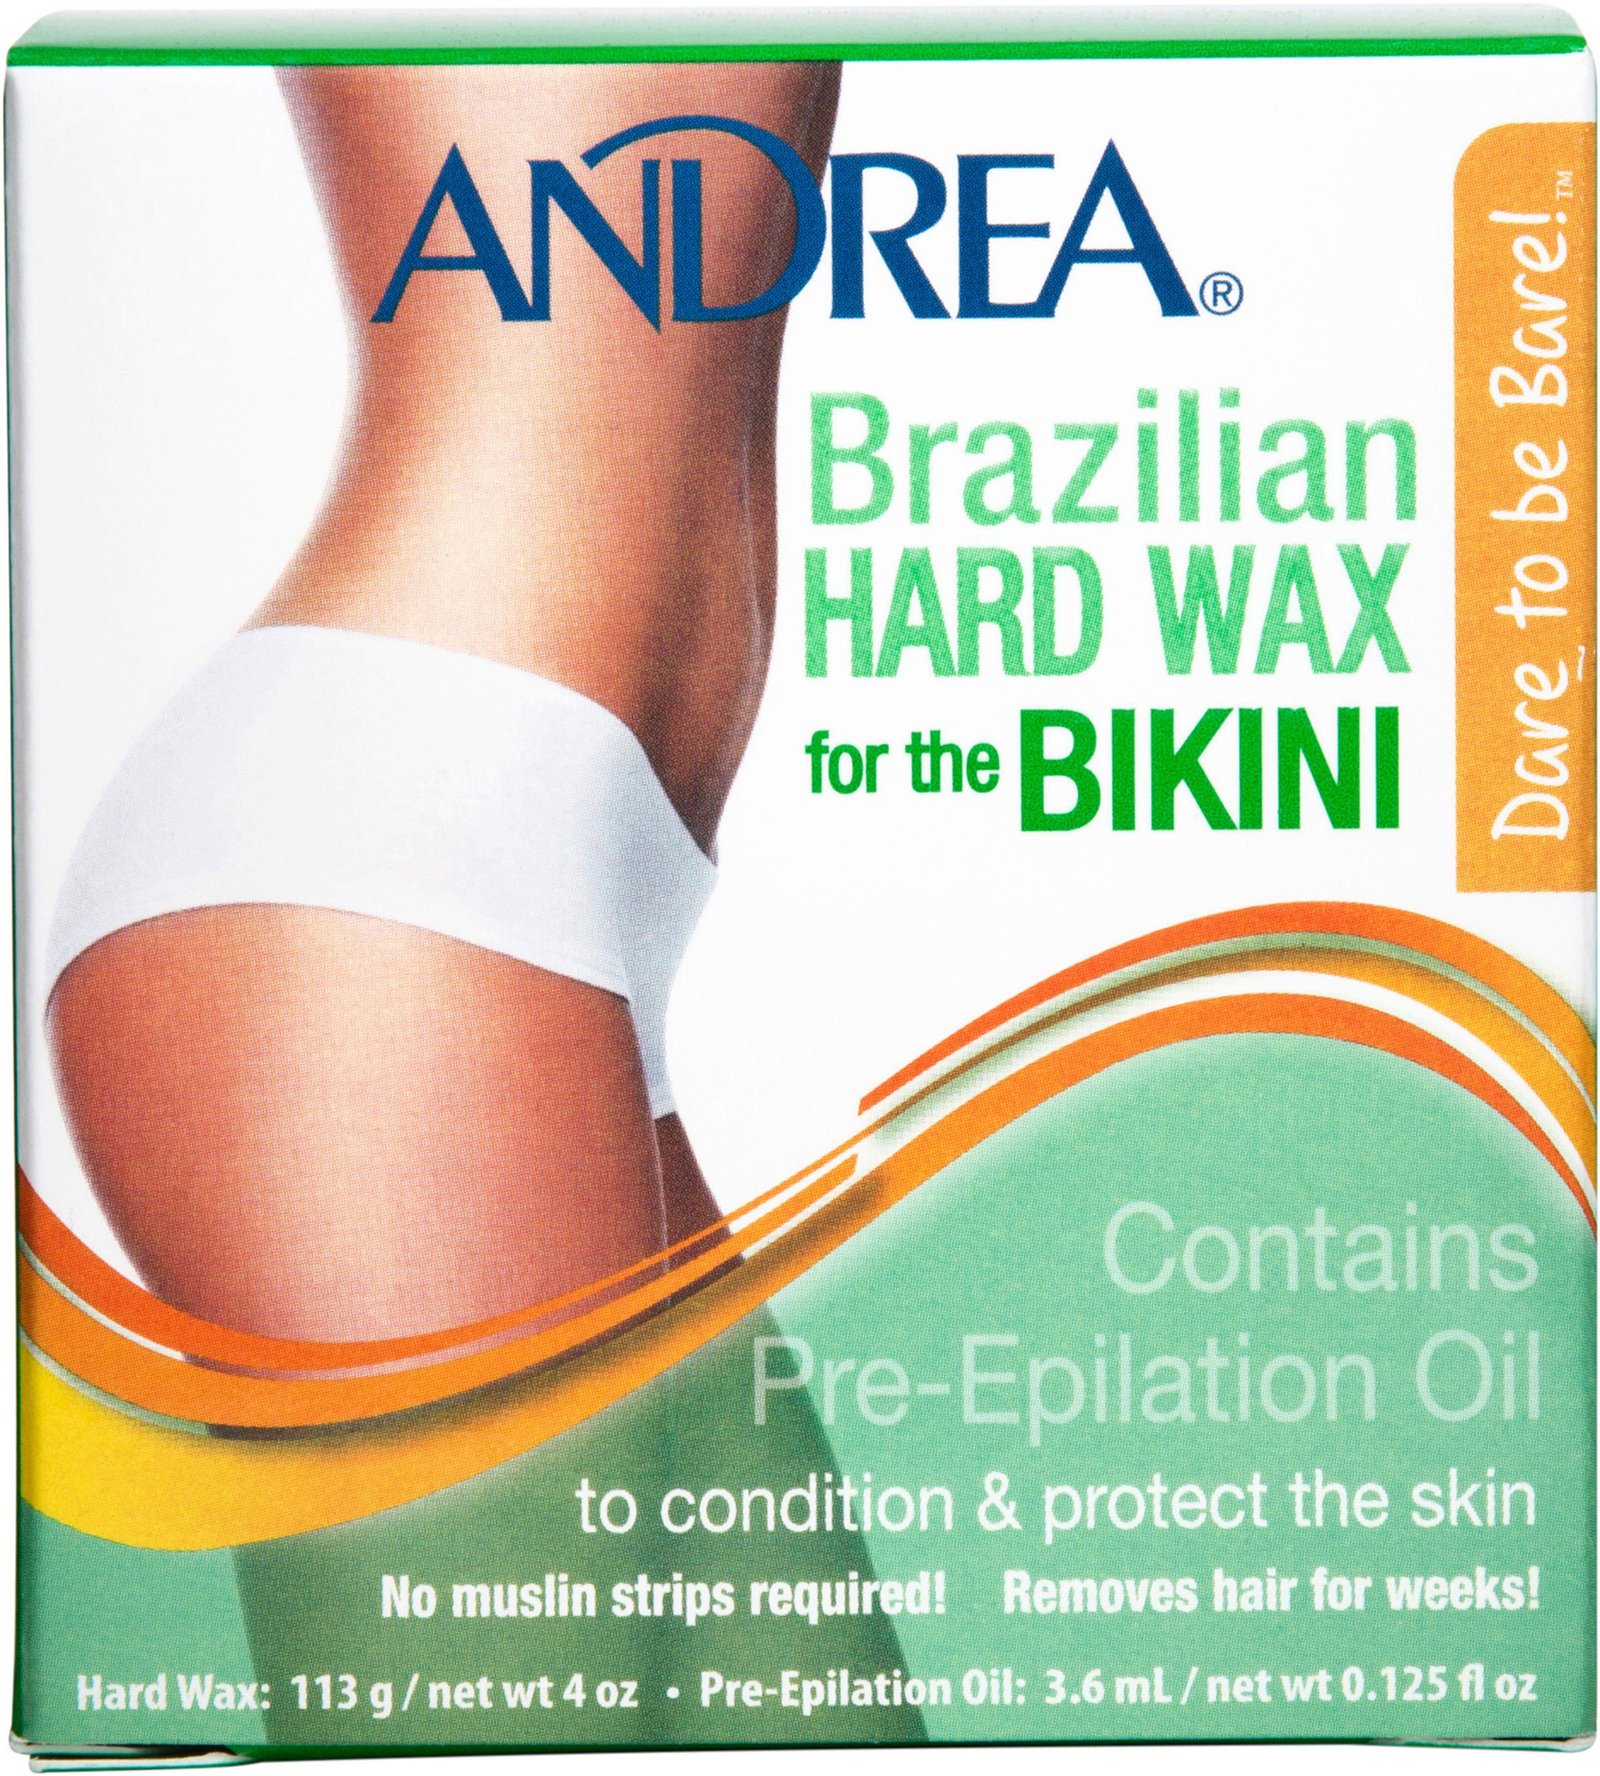 Andrea Brazilian Hard Wax Bikini 113 g